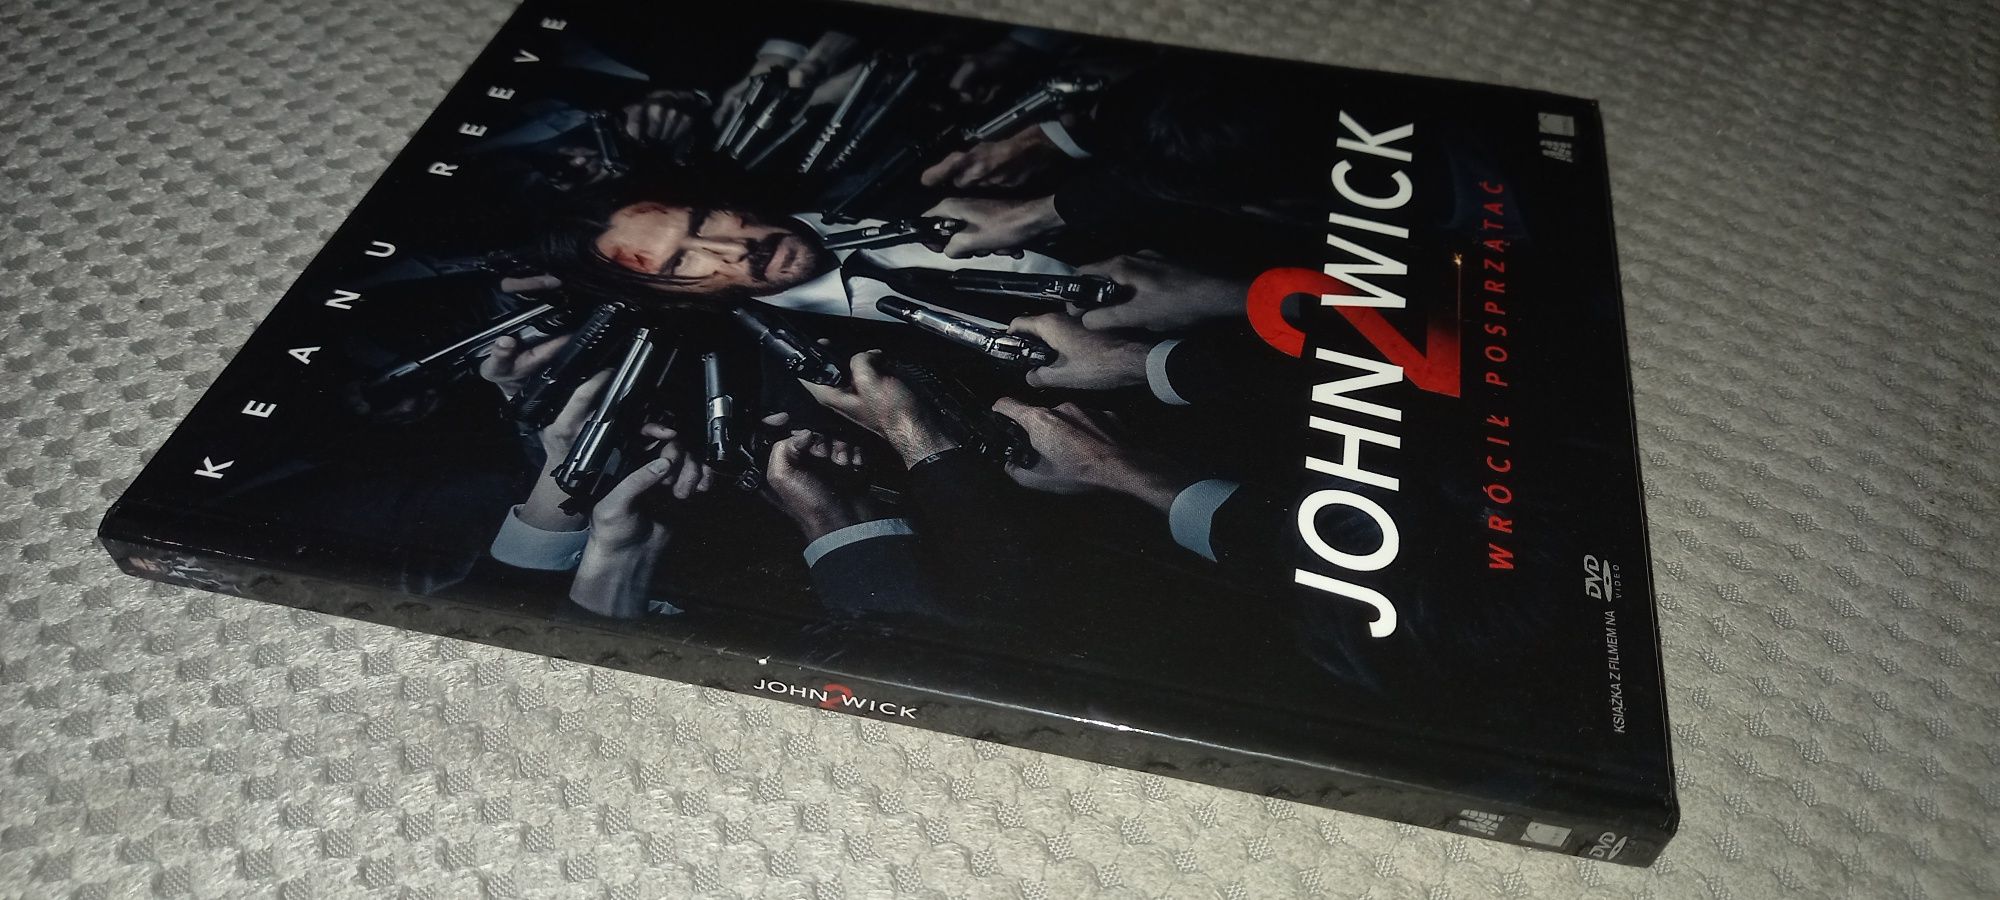 John wick 2 dvd   .